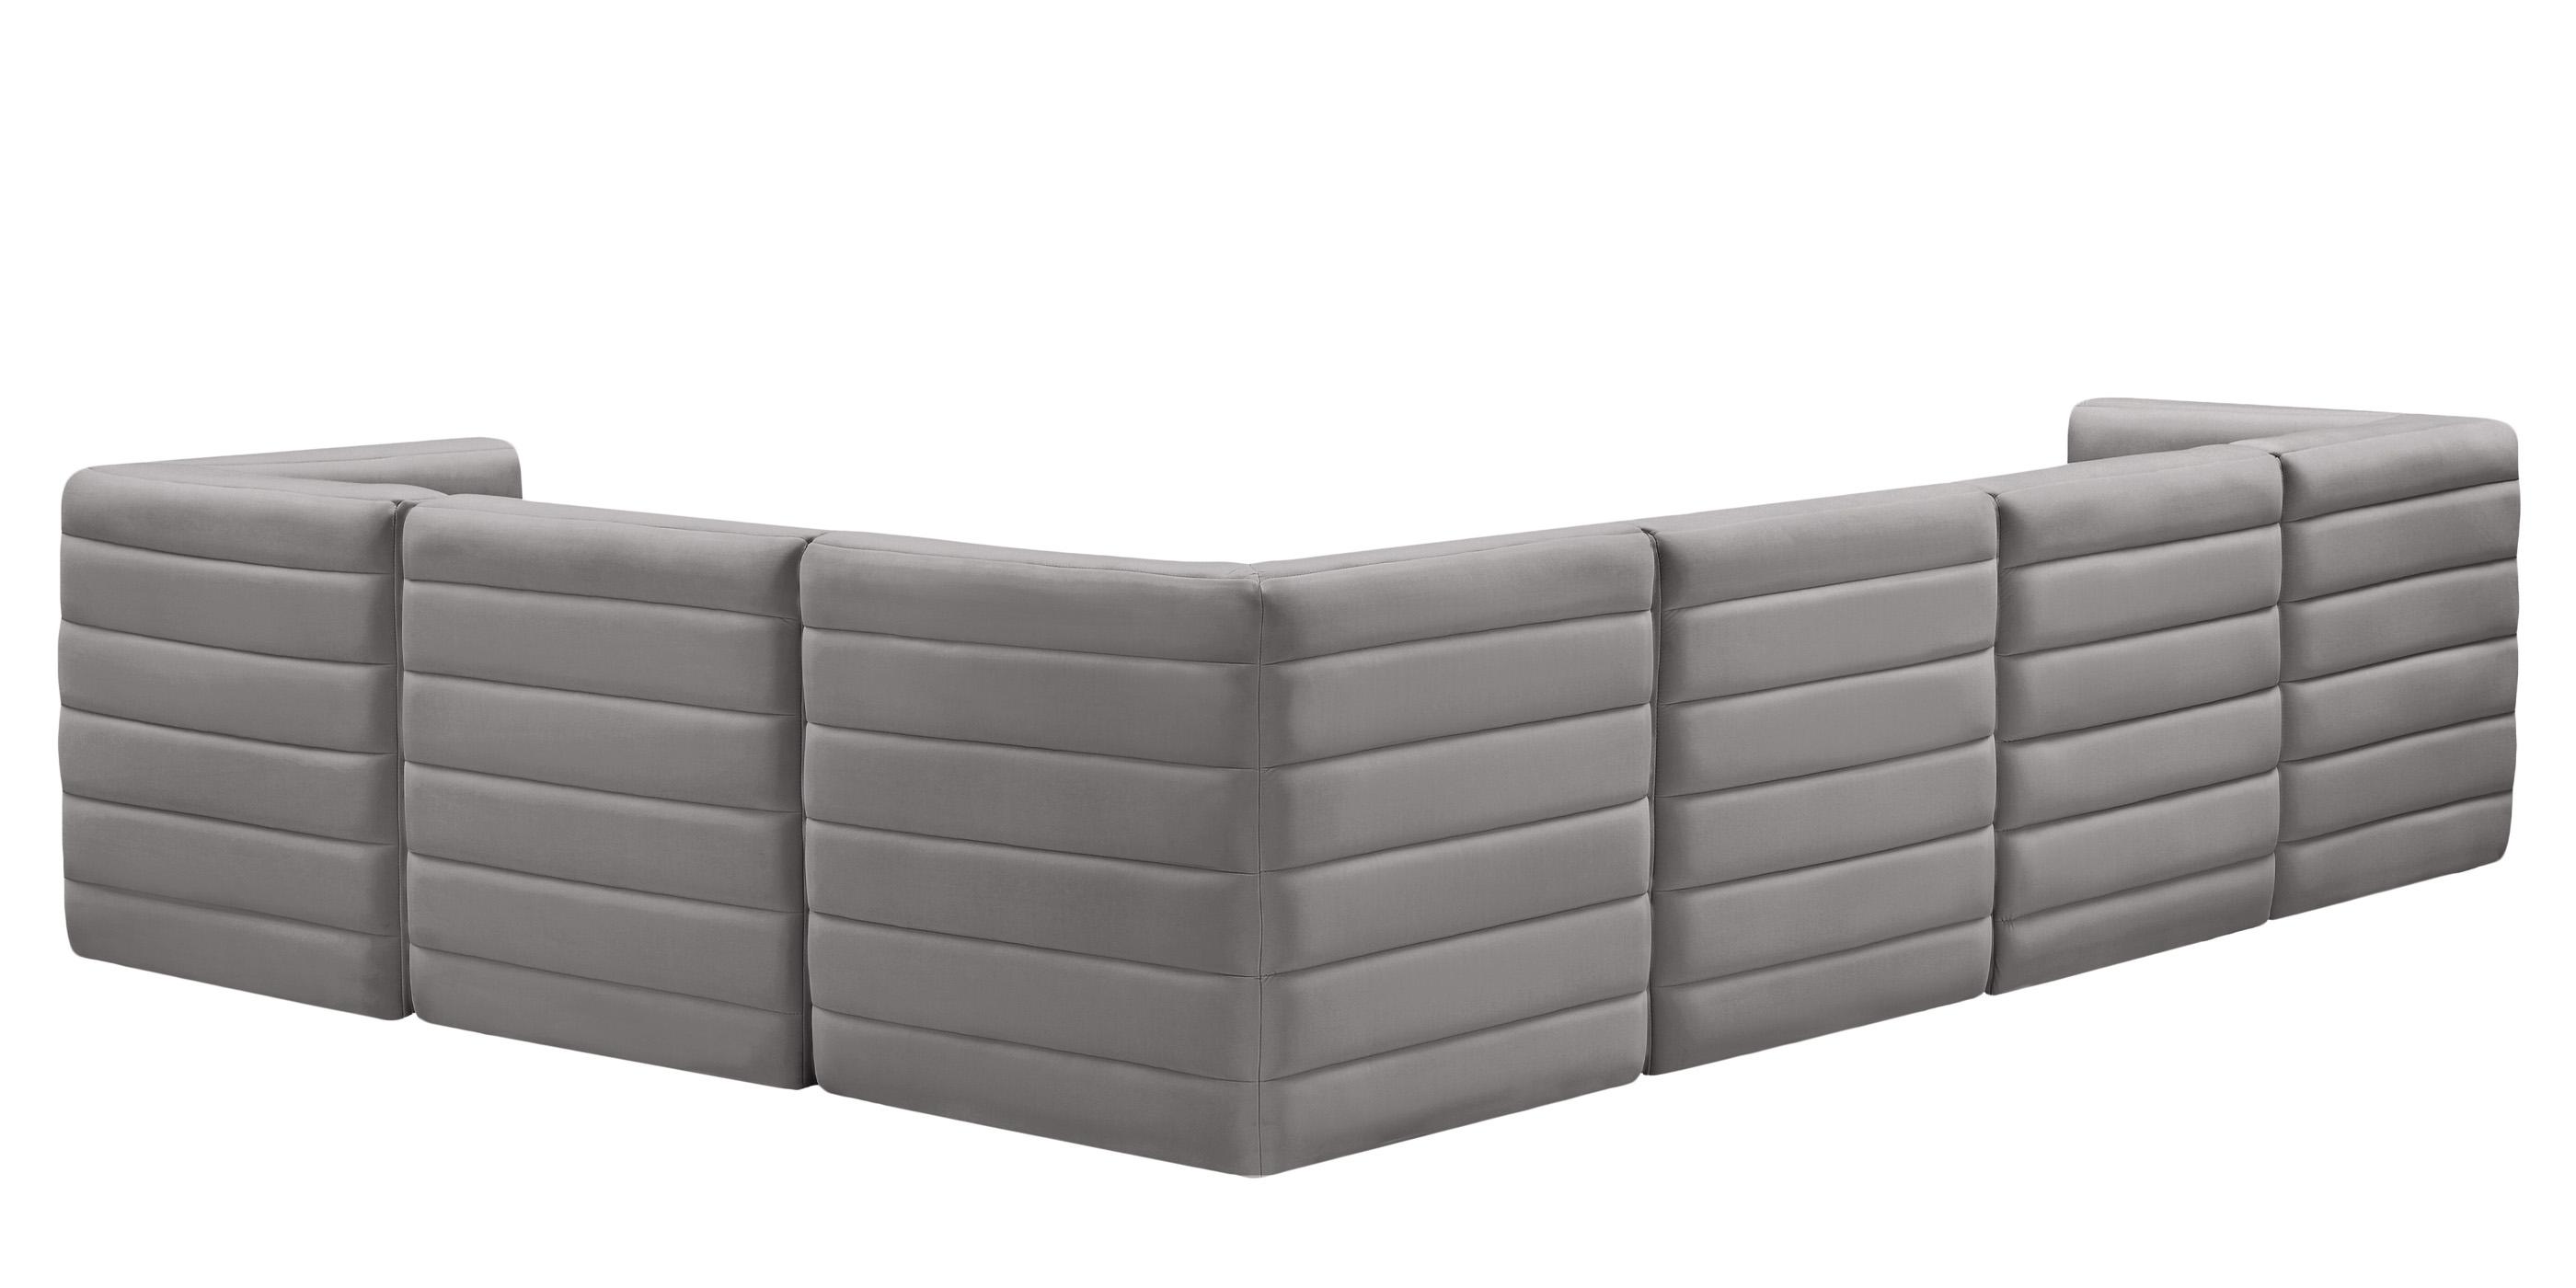 

    
677Grey-Sec6A Meridian Furniture Modular Sectional Sofa
